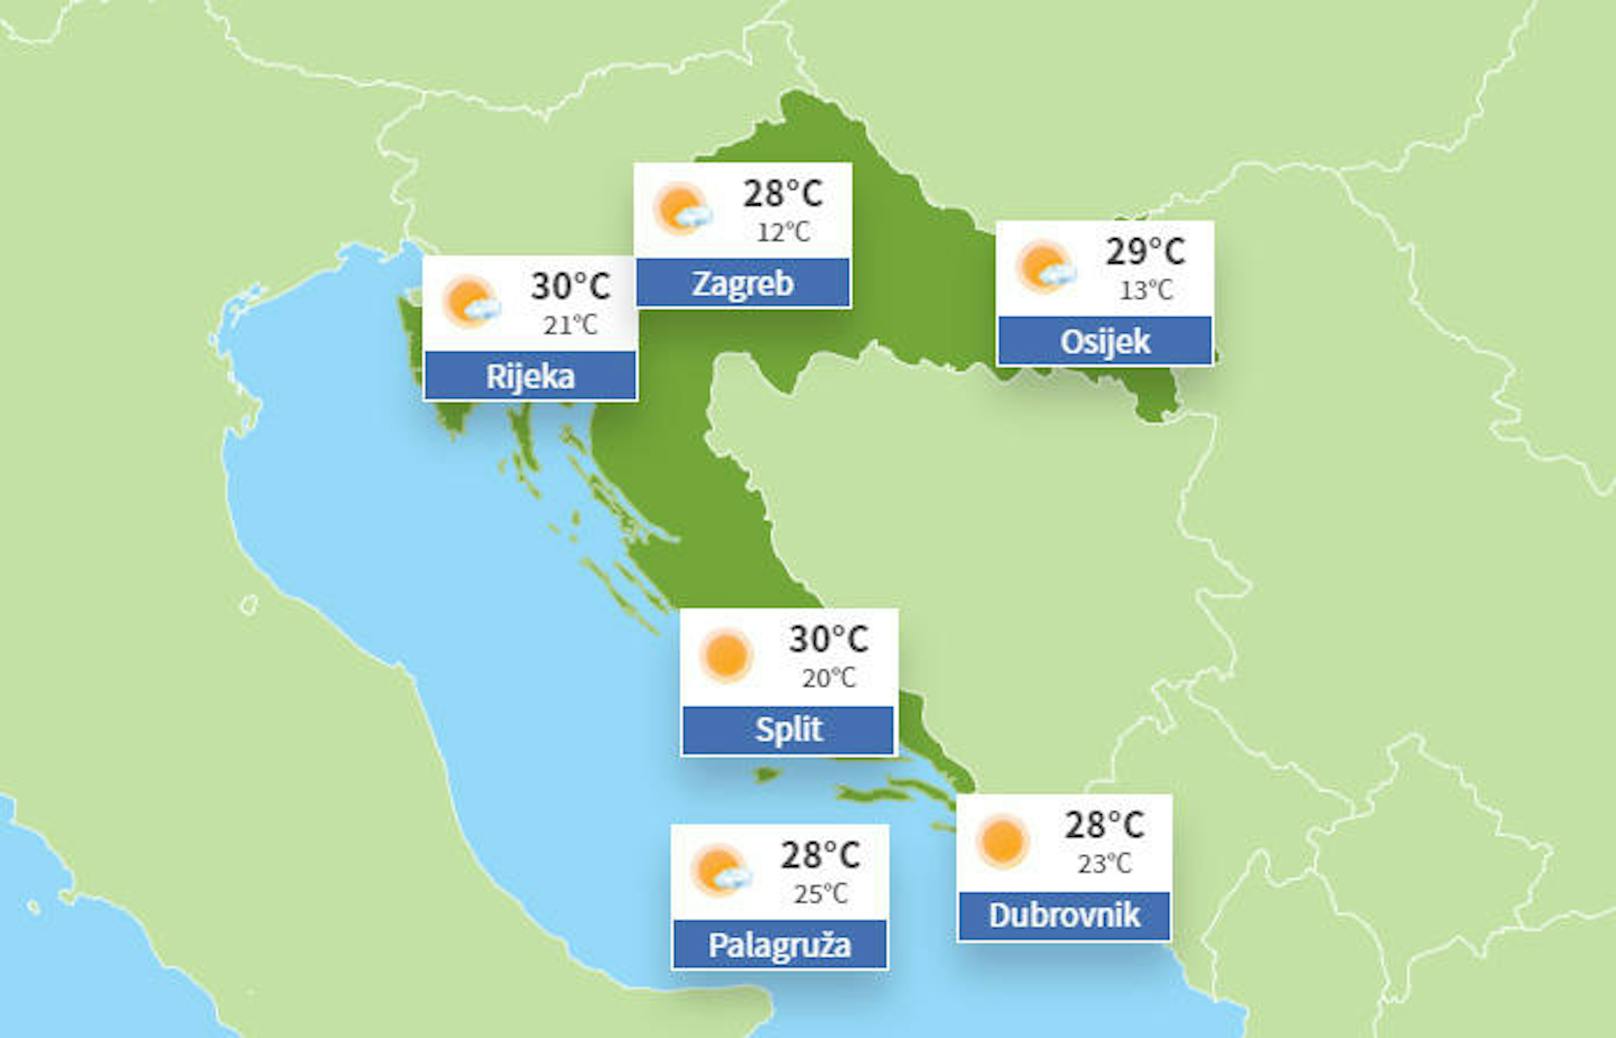 Wetter aktuell in Kroatien.